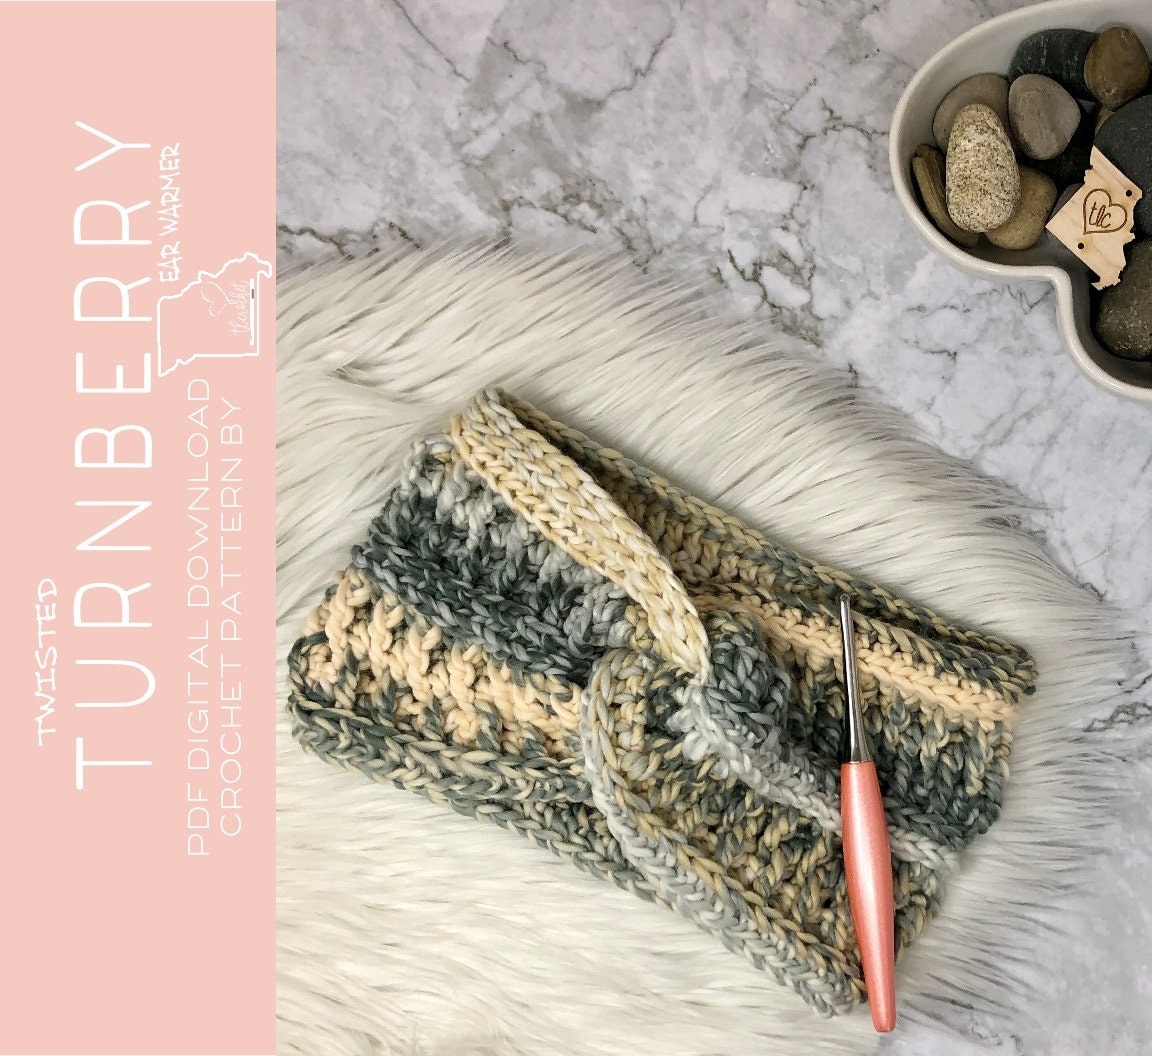 Turnberry Leg Warmers, Crochet PDF Digital Download Pattern